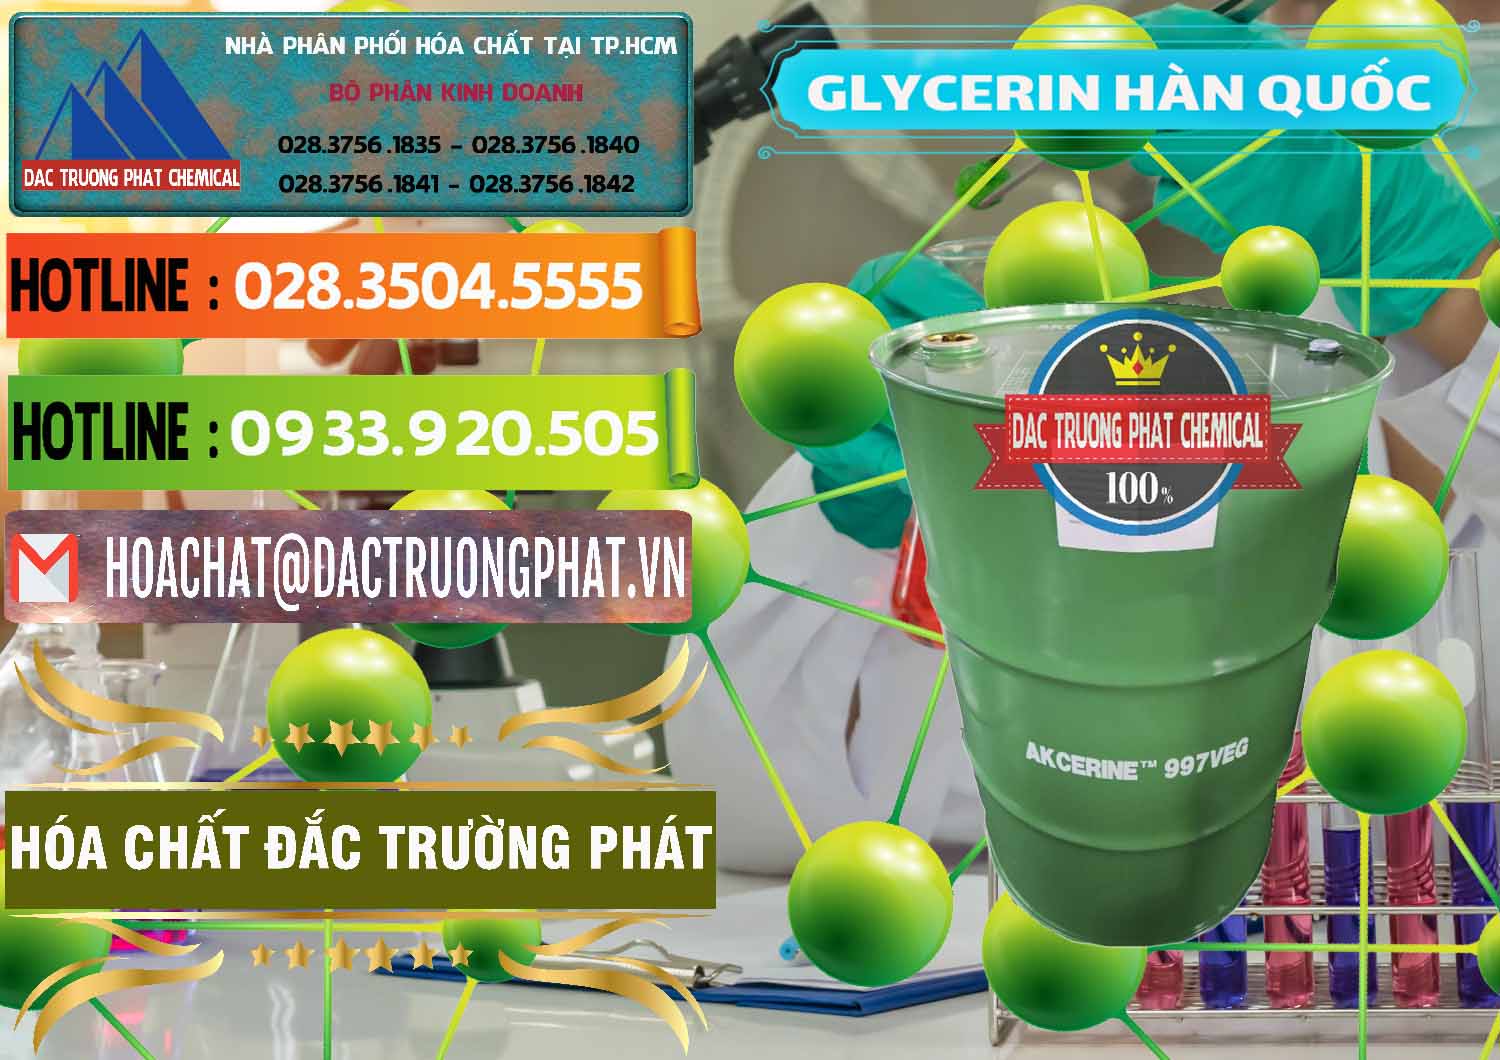 Nơi phân phối & bán Glycerin – C3H8O3 Hàn Quốc Korea - 0403 - Cty phân phối ( kinh doanh ) hóa chất tại TP.HCM - cungcaphoachat.com.vn